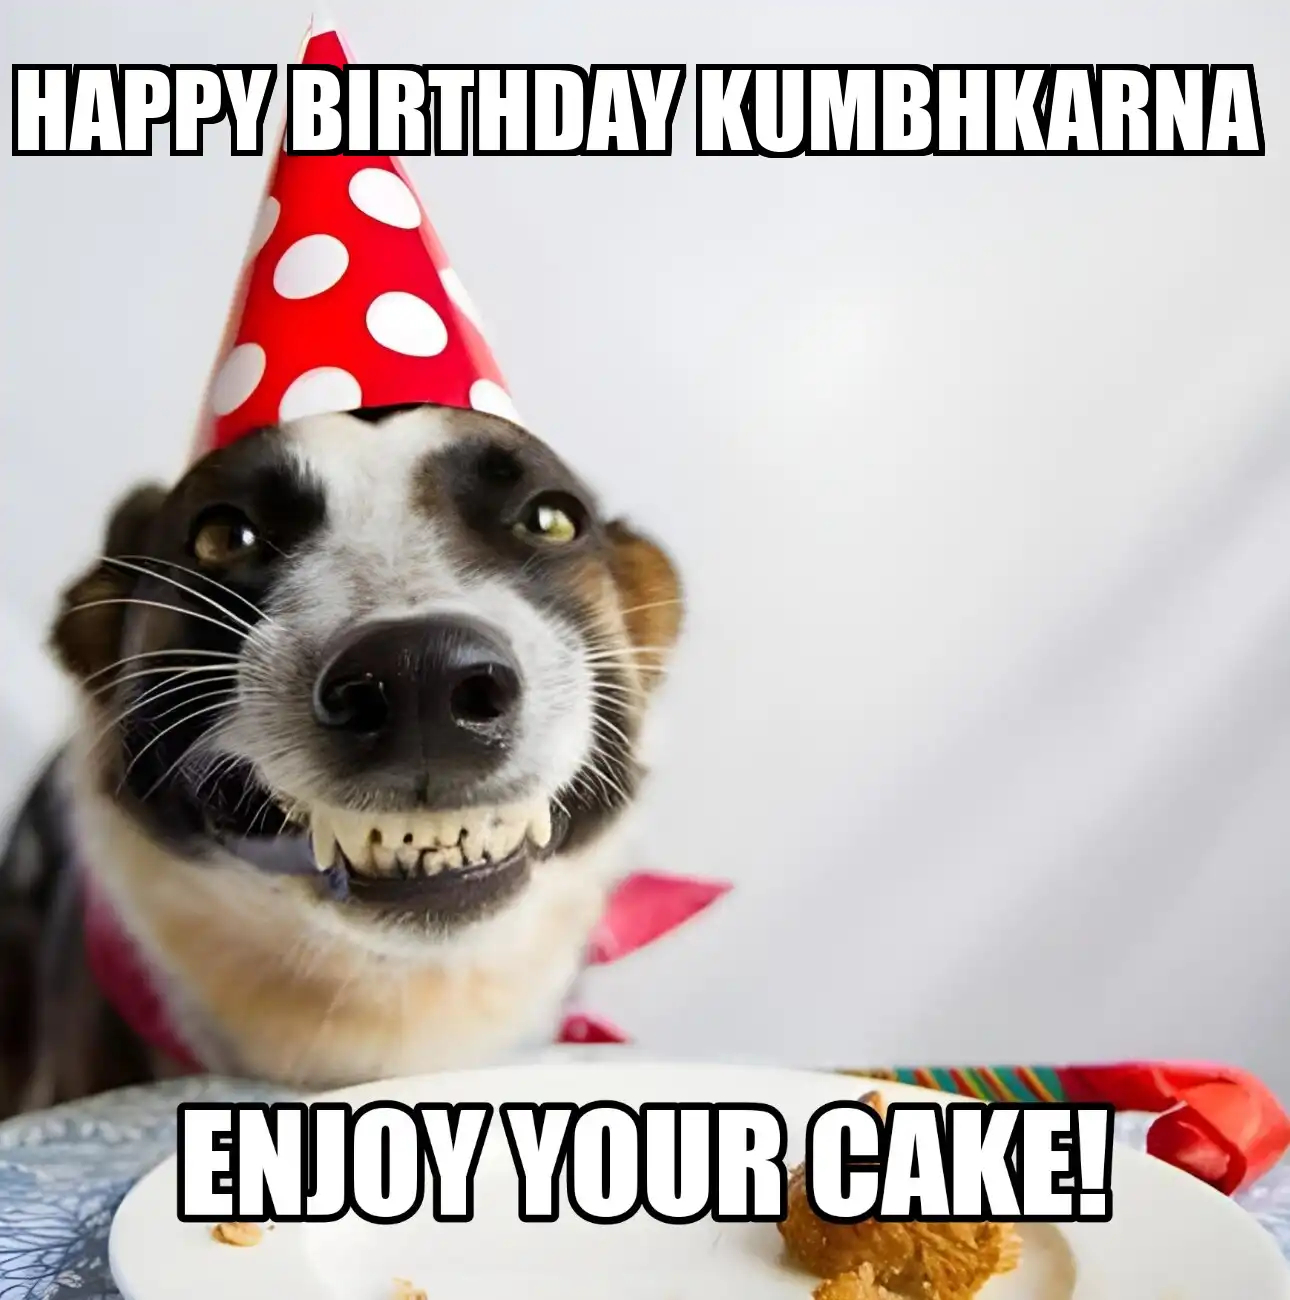 Happy Birthday Kumbhkarna Enjoy Your Cake Dog Meme